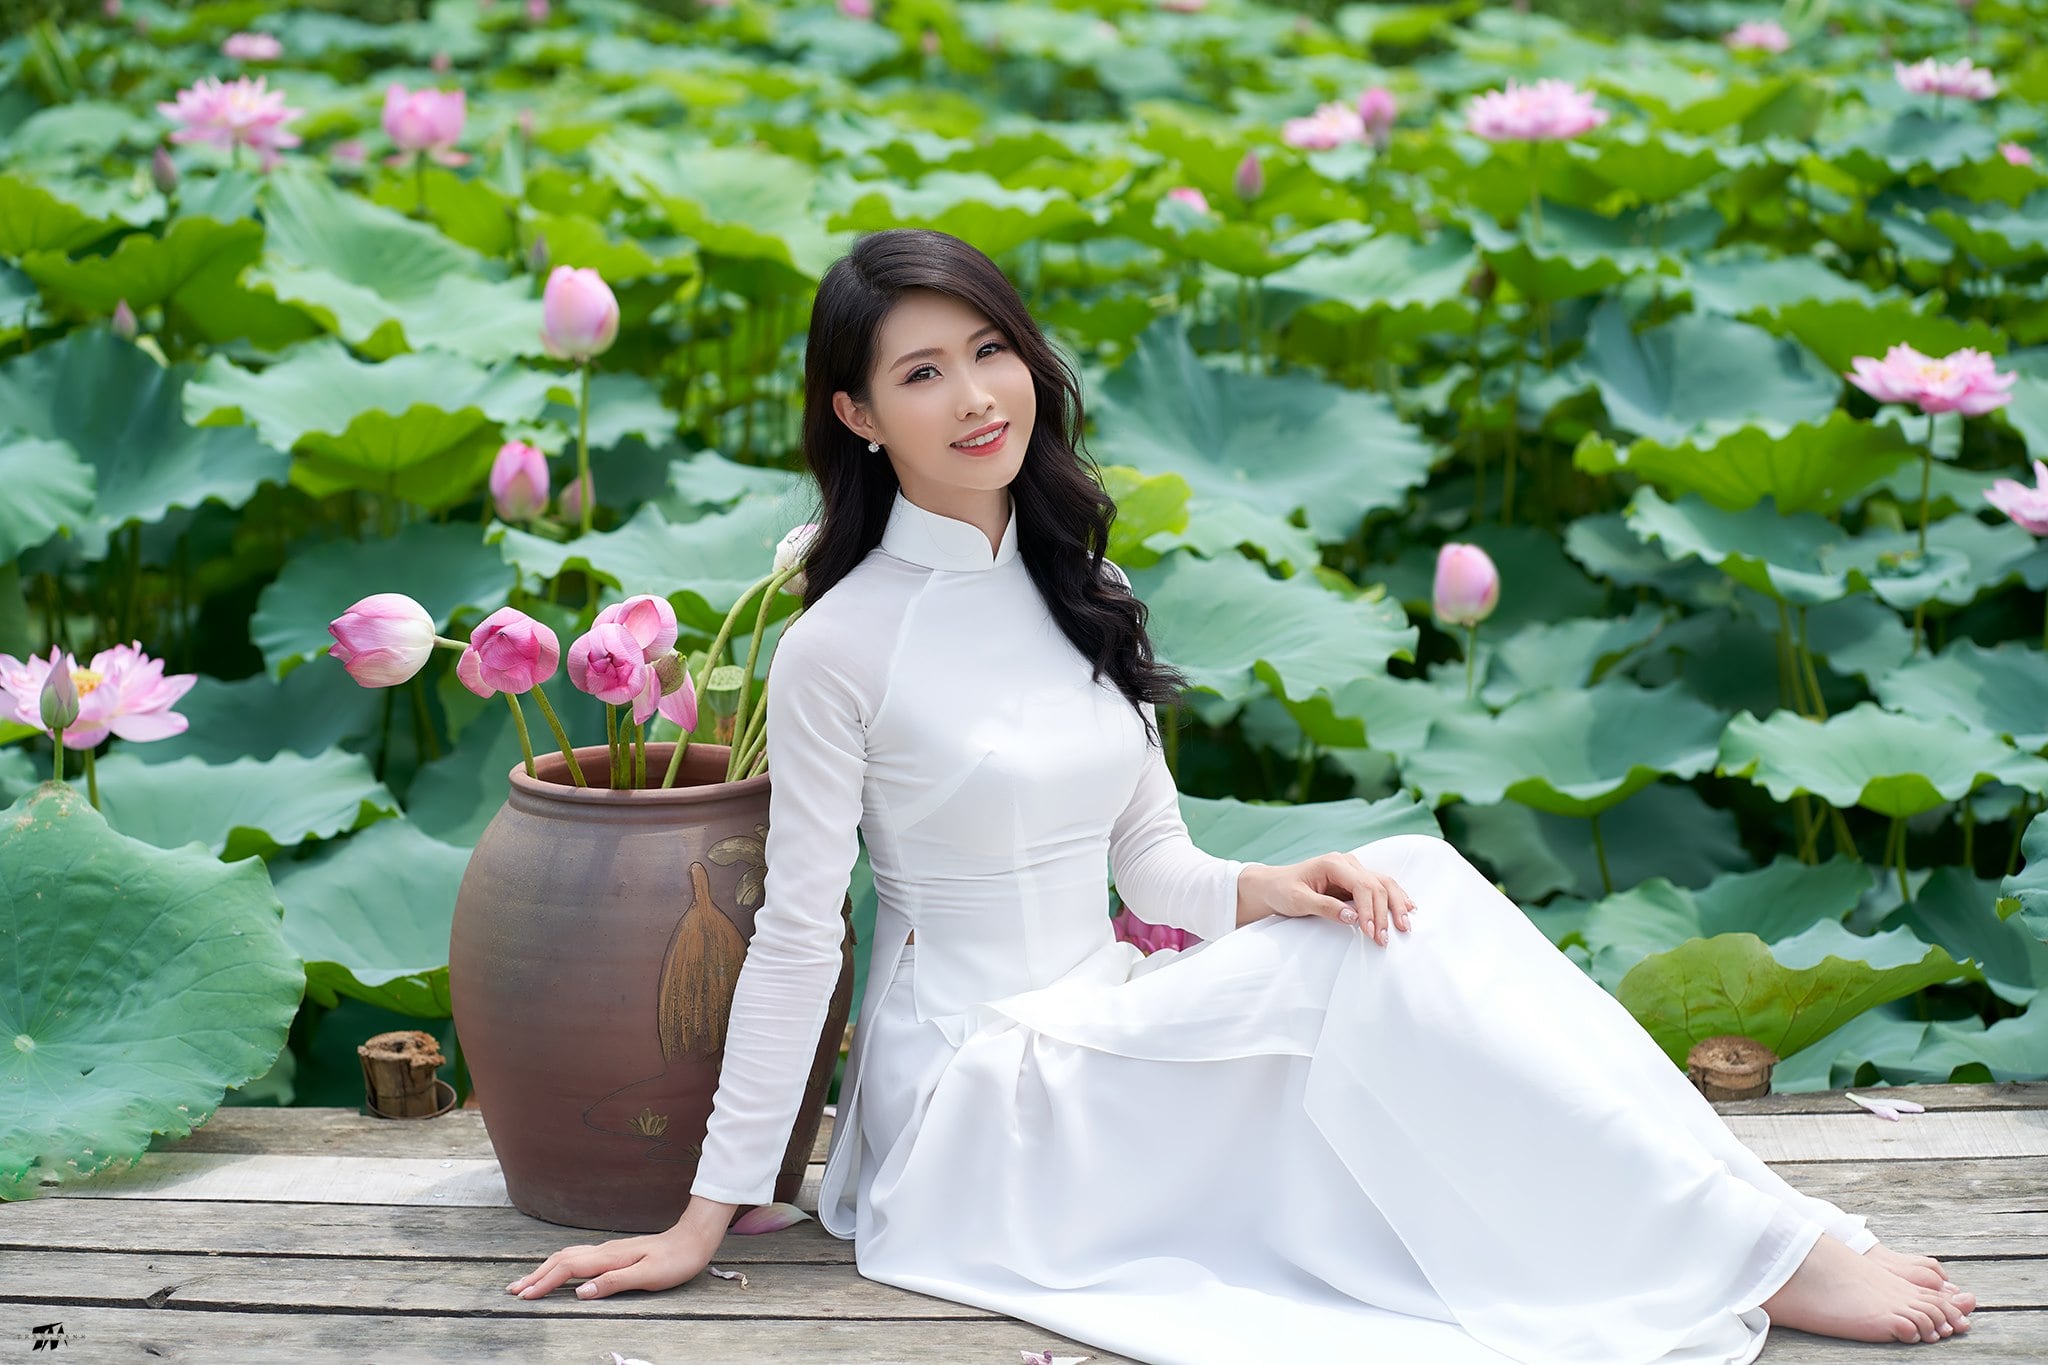 LOVE ÁO DÀI: Hình ảnh về một cô gái trong trang phục áo dài độc đáo và tươi trẻ, đính kèm hình ảnh động, chắc chắn sẽ là điều mà bạn không thể bỏ qua. Hãy để bức hình này truyền cảm hứng cho bạn khi yêu thích và tự hào về áo dài Việt Nam.